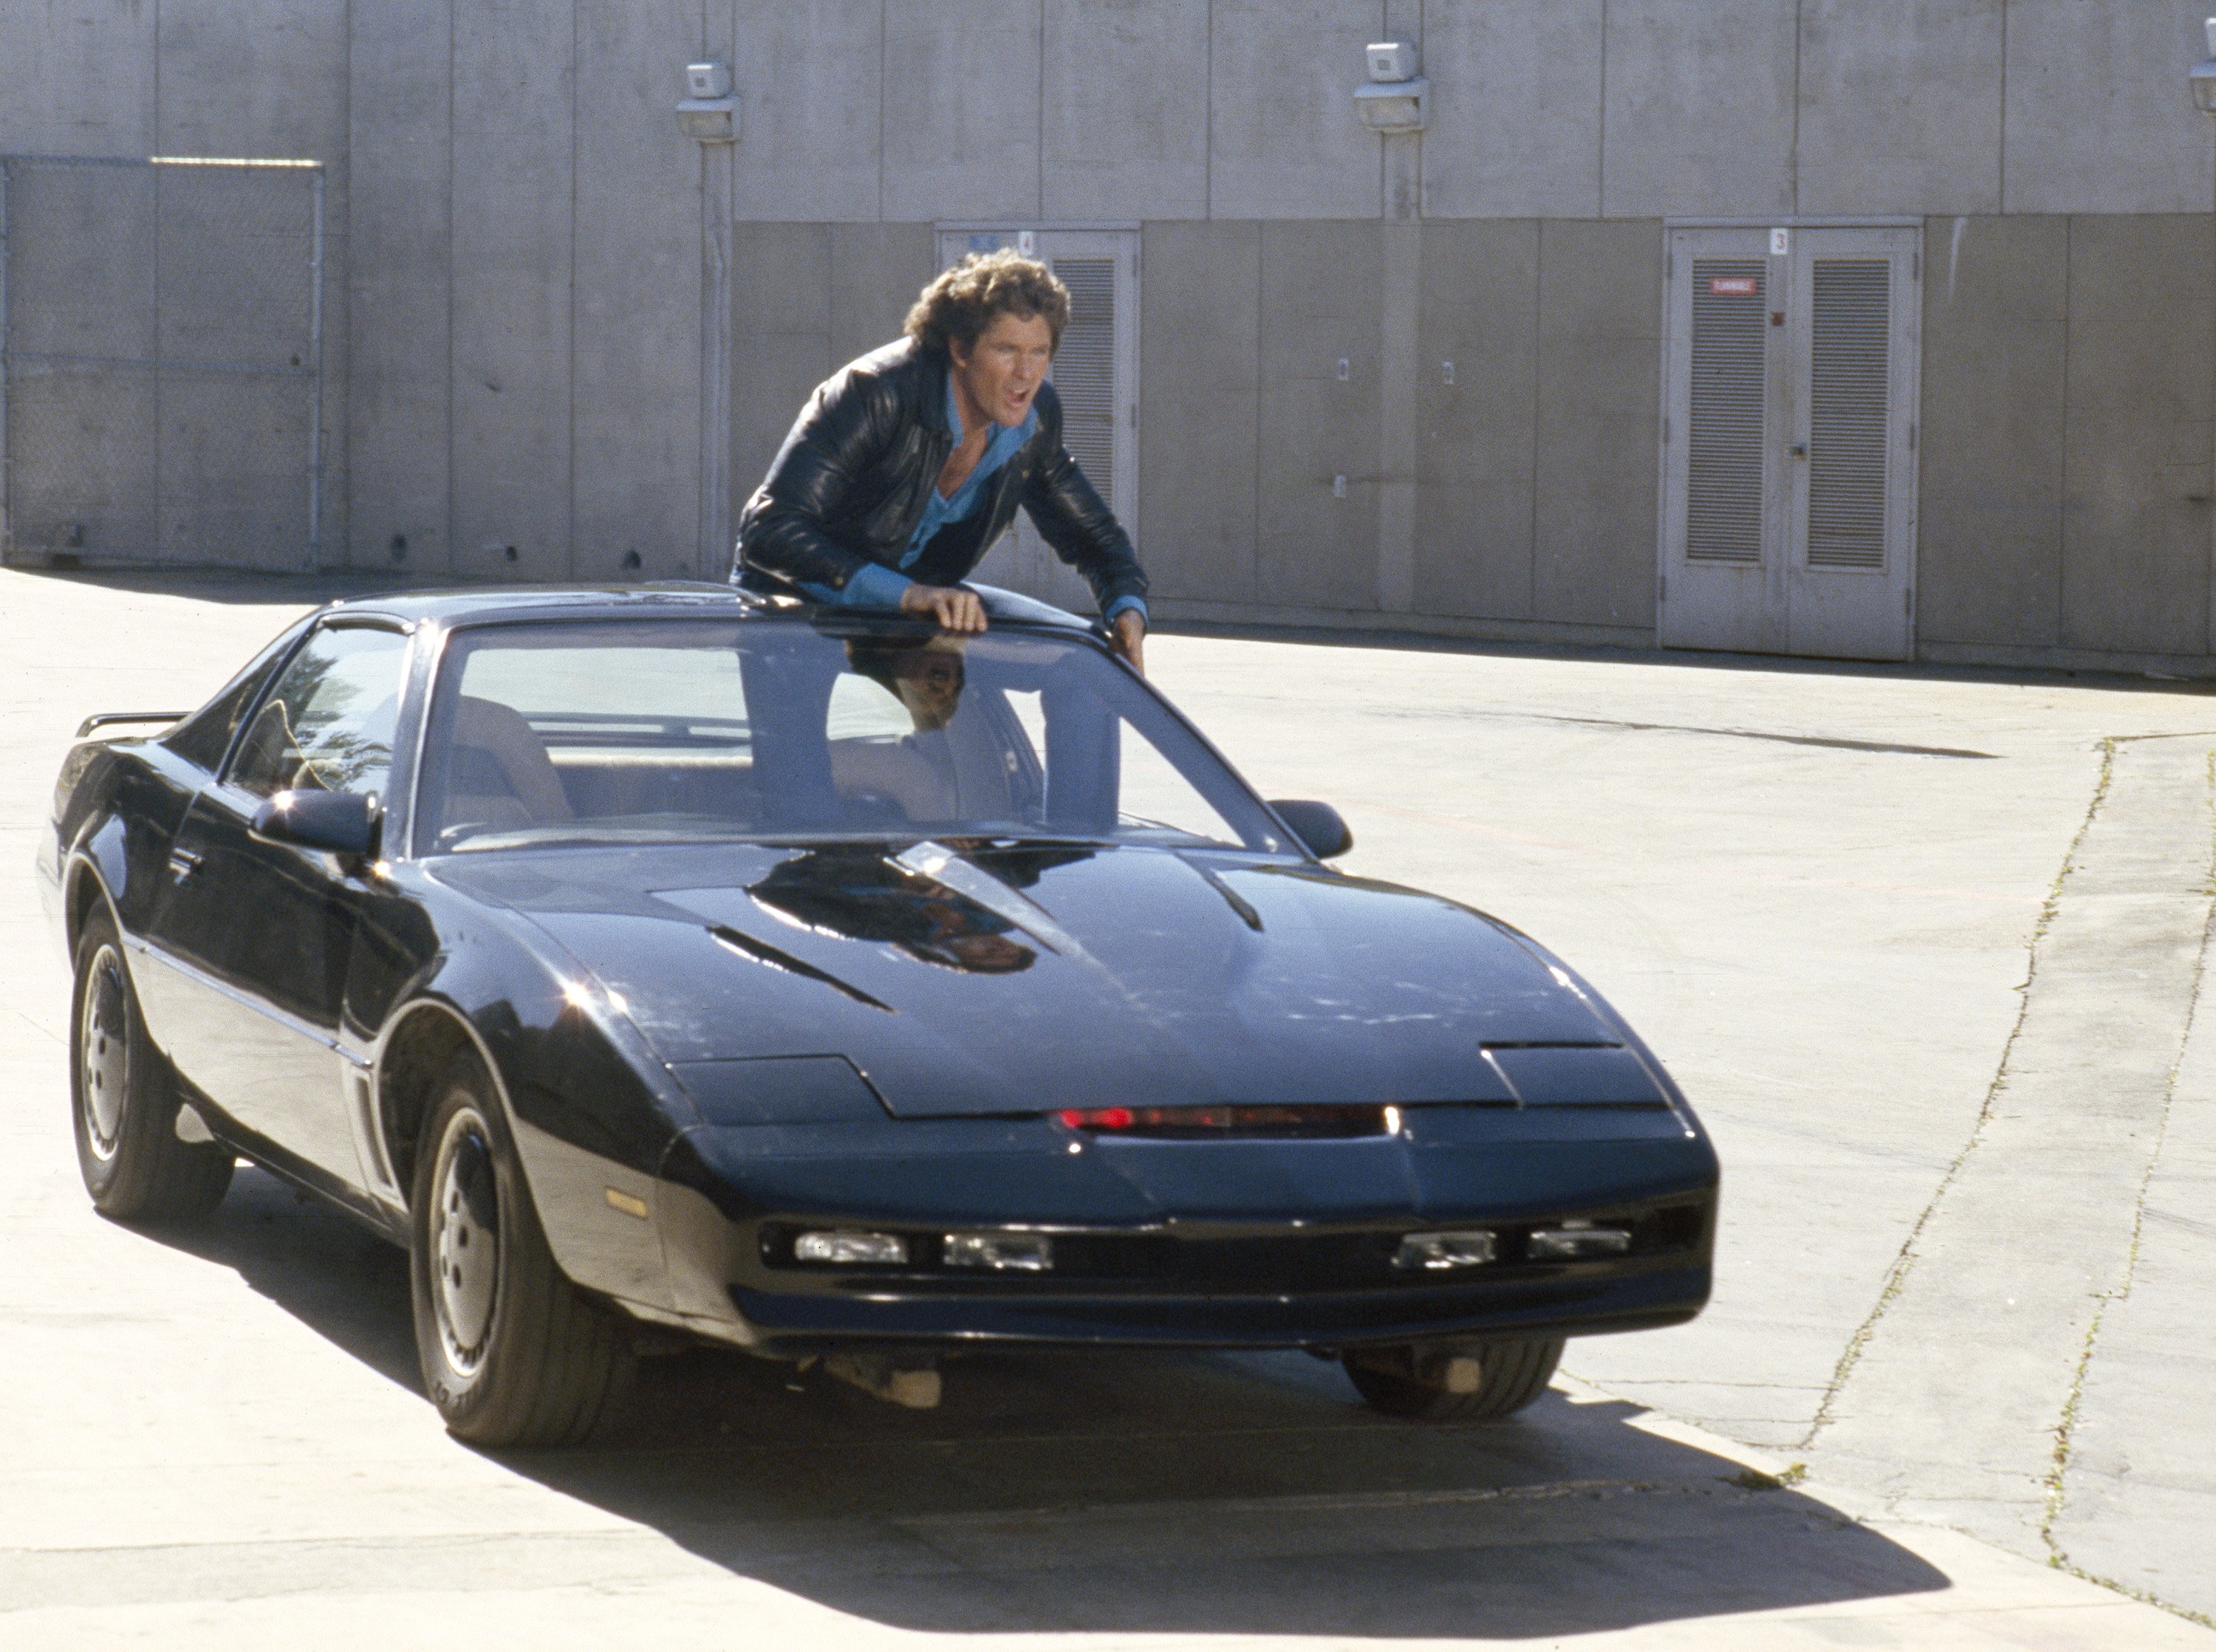 David Hasselhoff als Michael Knight und sein K.I.T.T. | Quelle: Getty Images